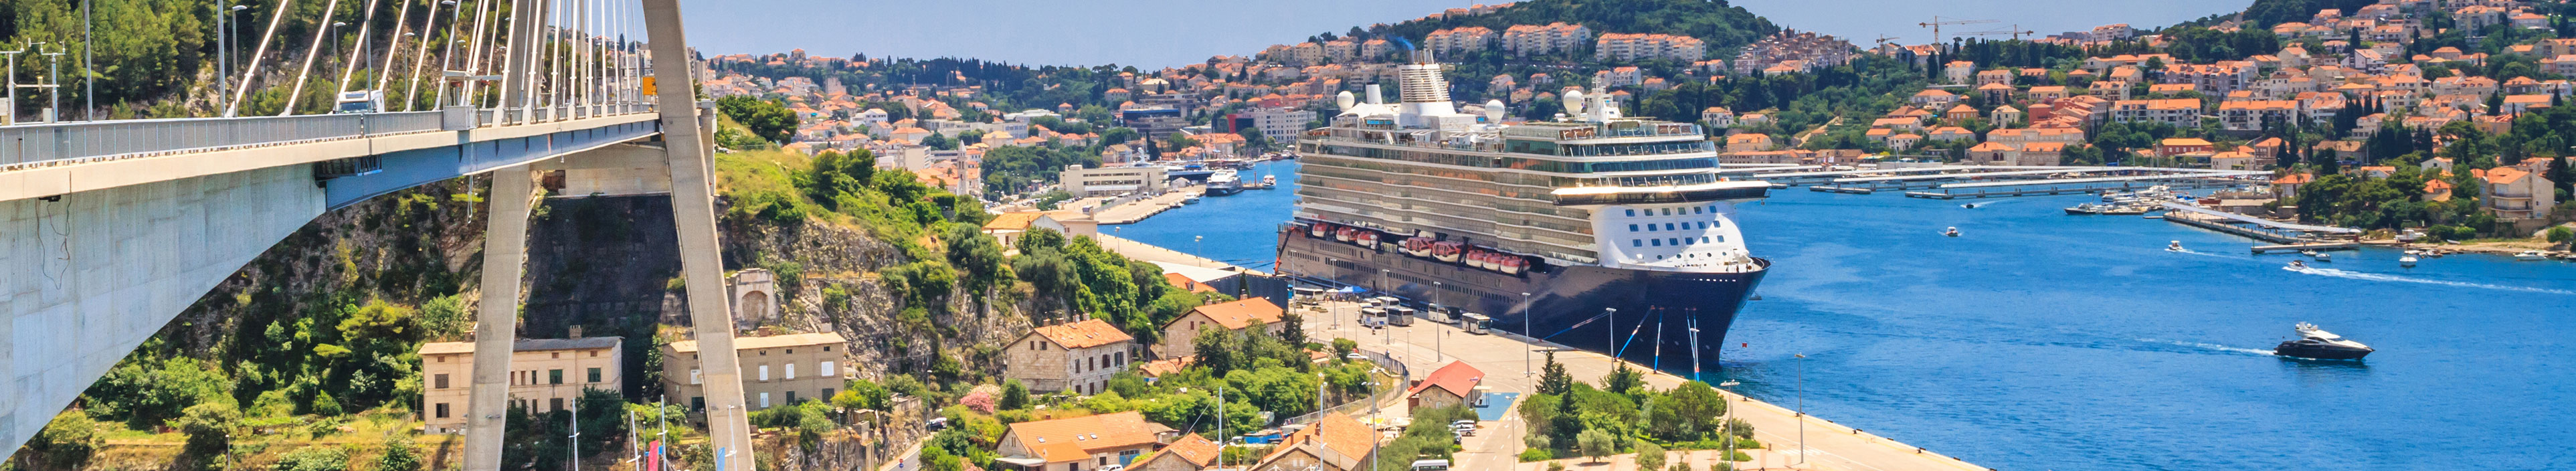 Blick auf Dubrovnik von der Franjo-Tudman-Brücke aus, an der kroatischen Adriaküste